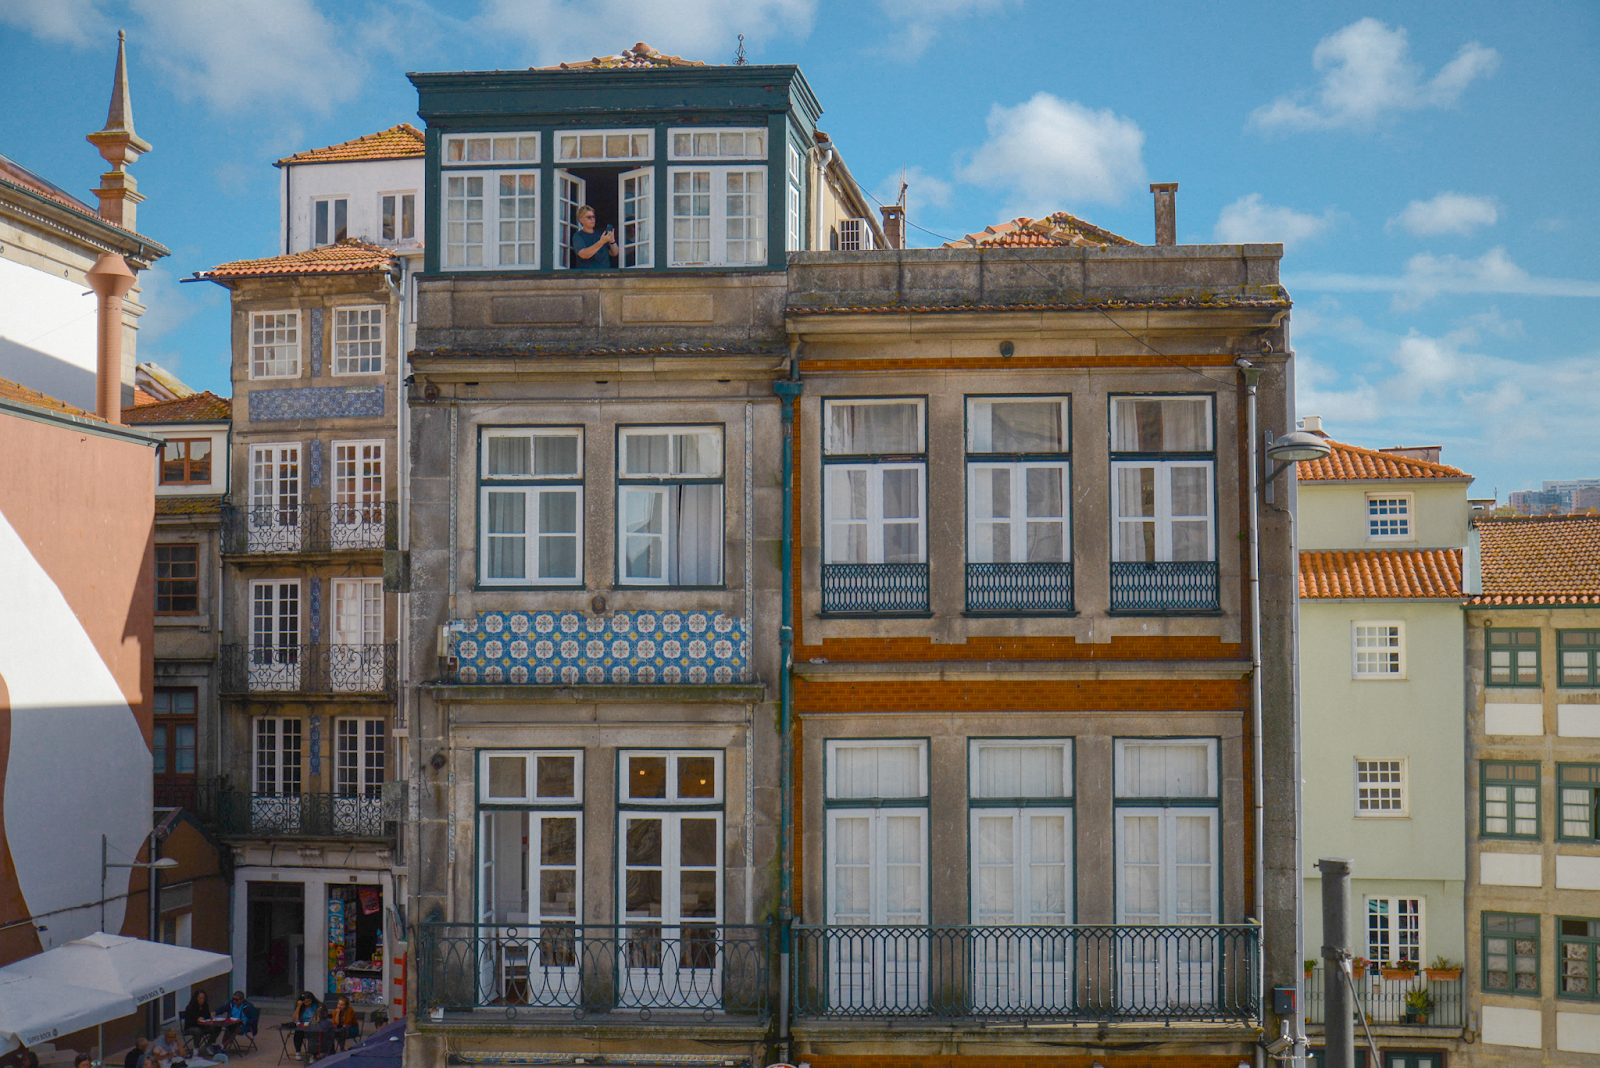 Porto facades and people, 2 Days in Porto, Portugal, FOREVERVANNY.com